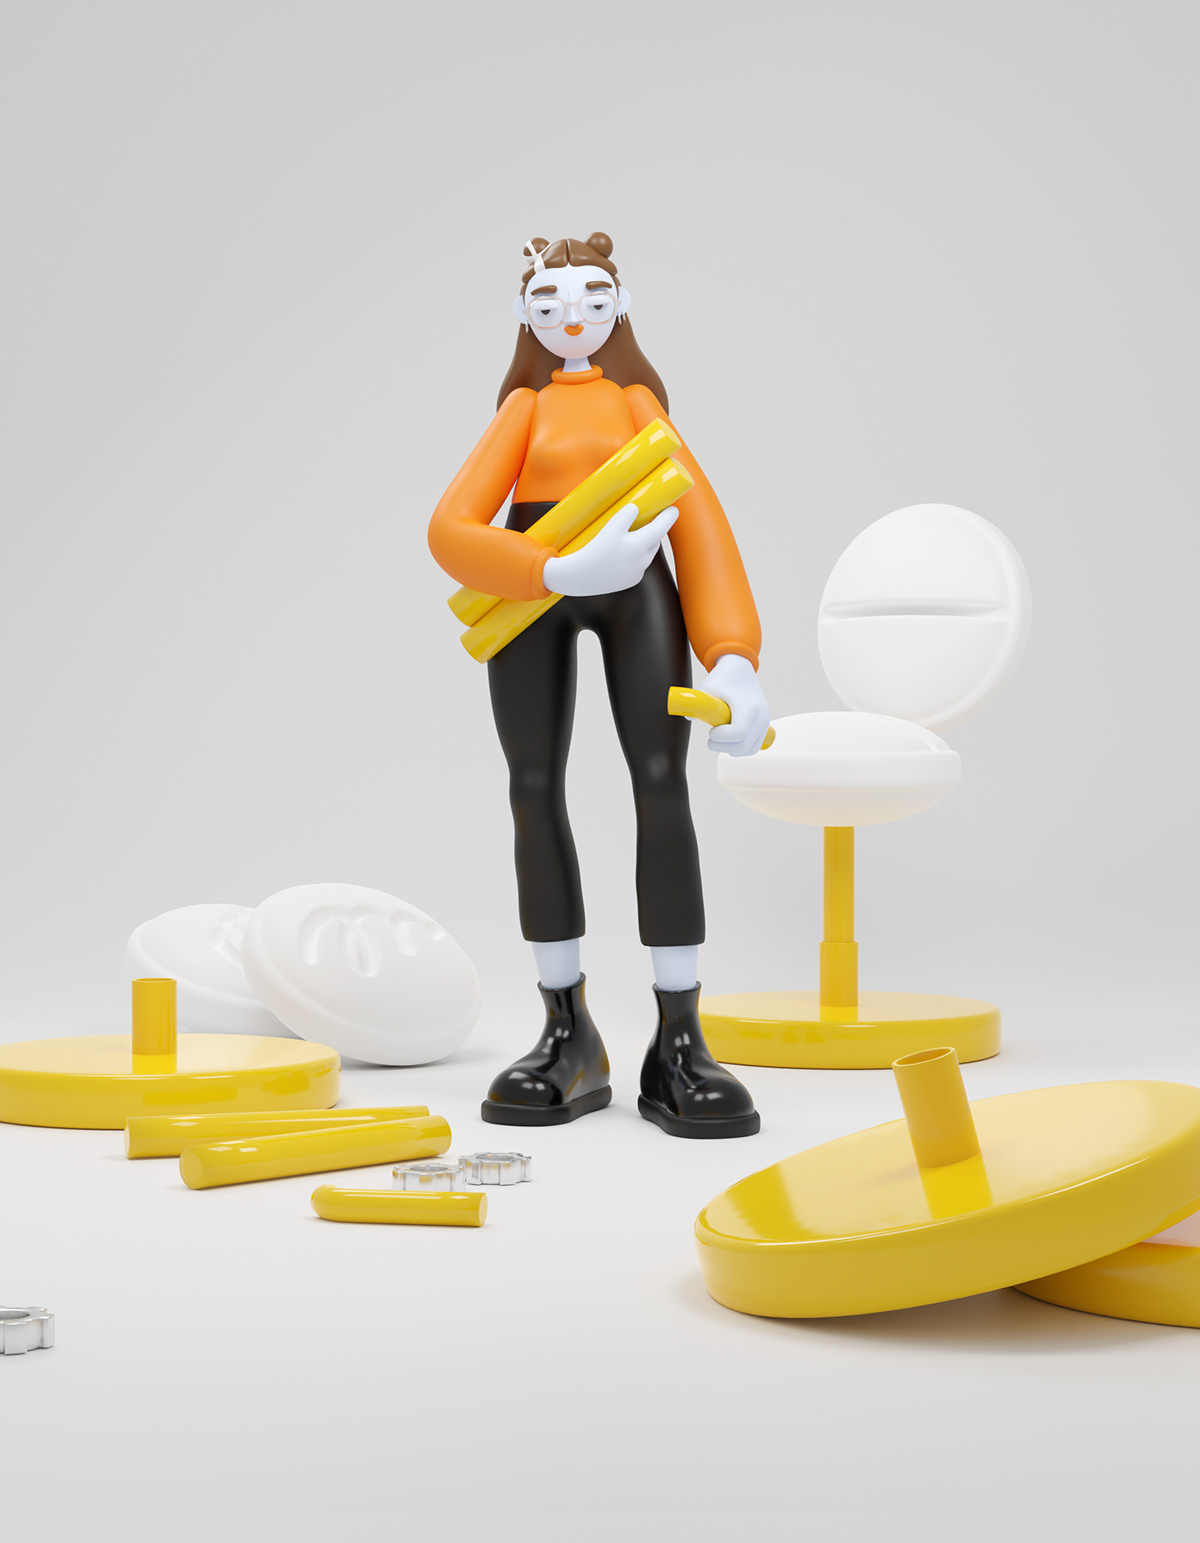 3D chair blender modeling CGI